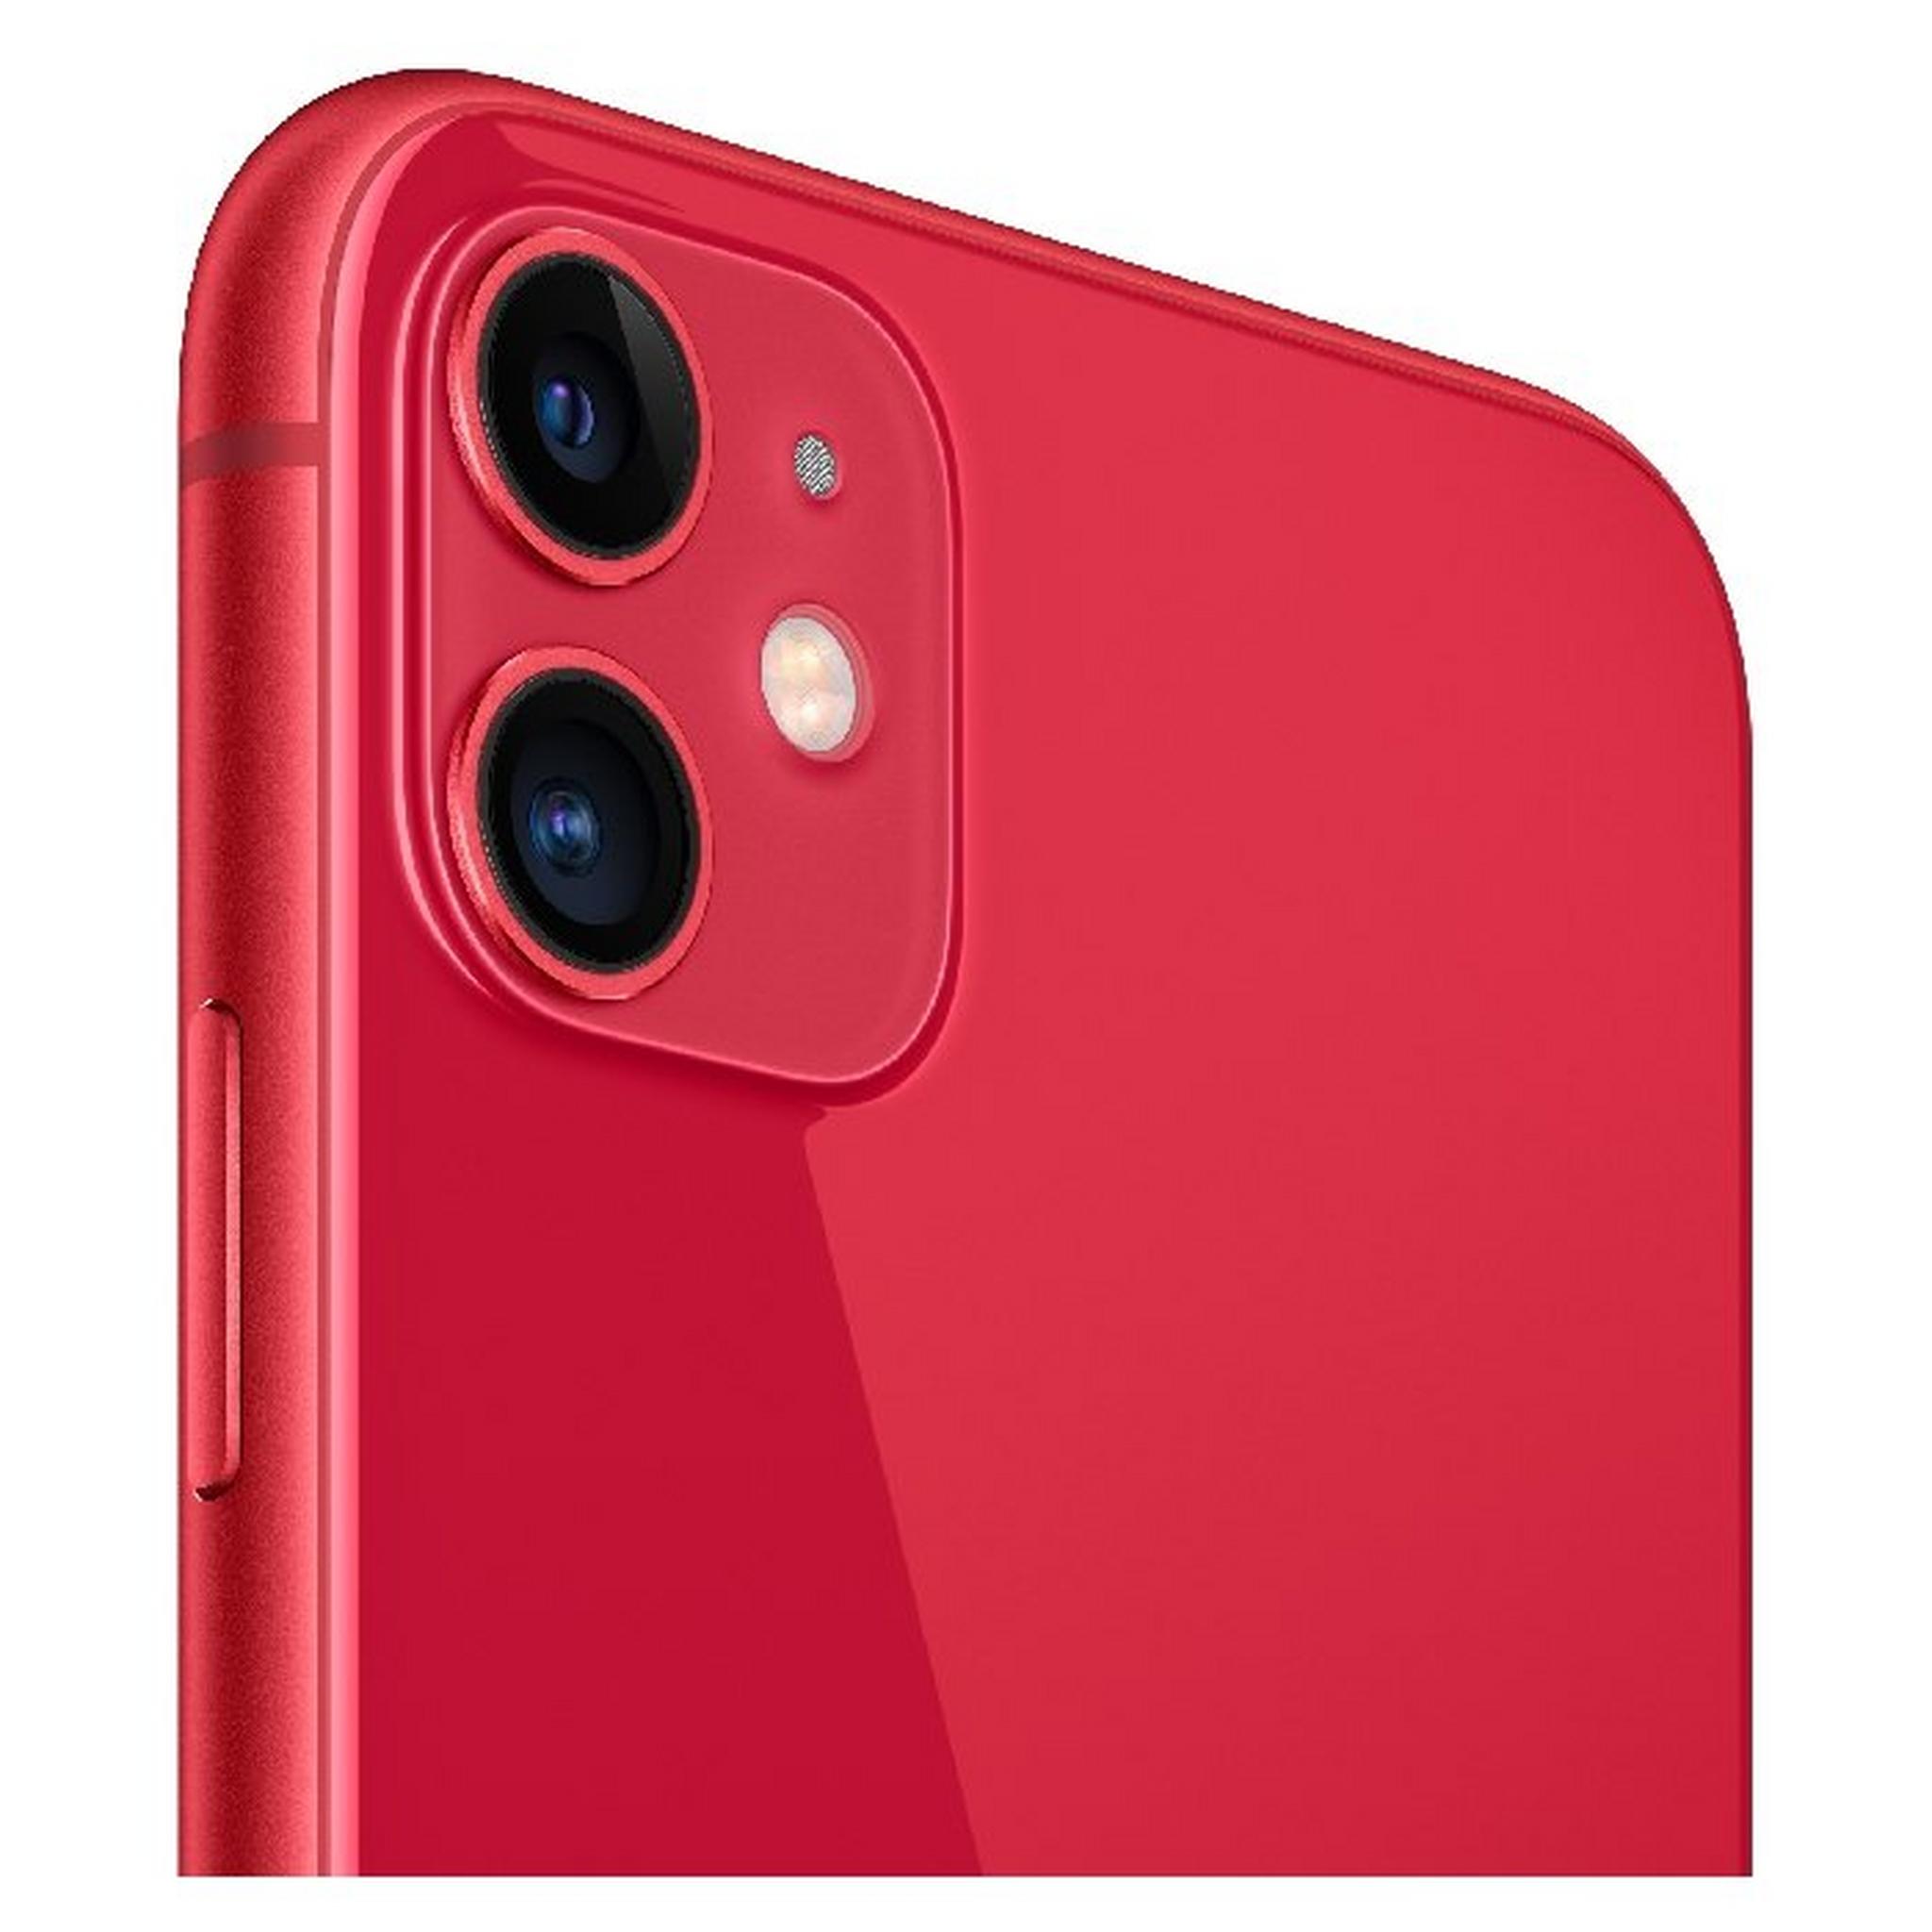 هاتف أبل أيفون 11 بسعة 64 جيجابايت - أحمر